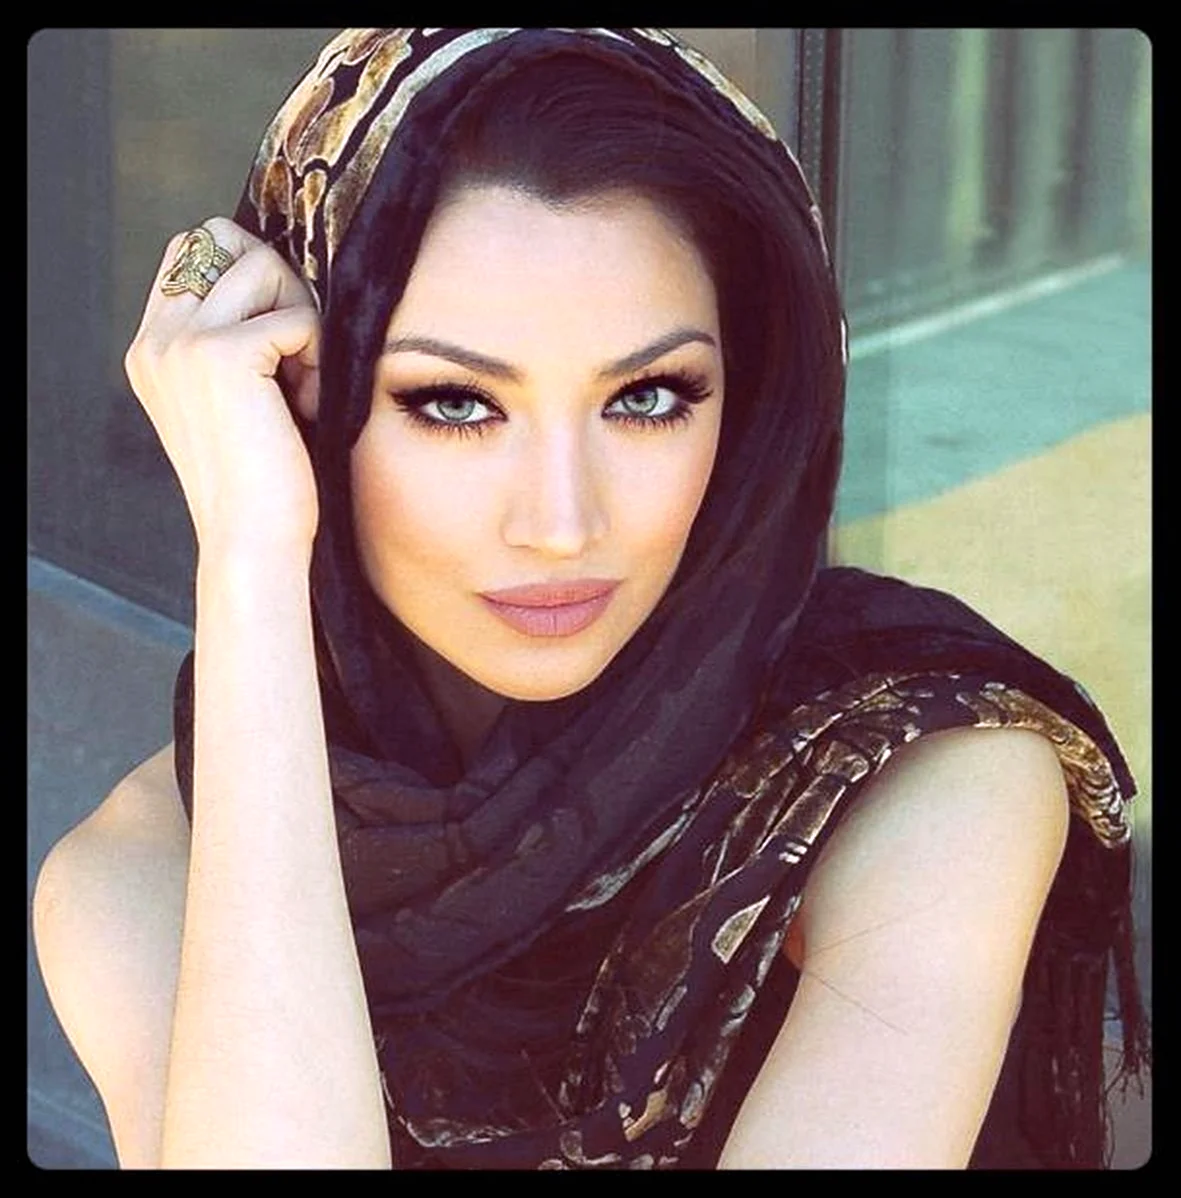 Иранская модель Клаудия Линкс. Красивая девушка